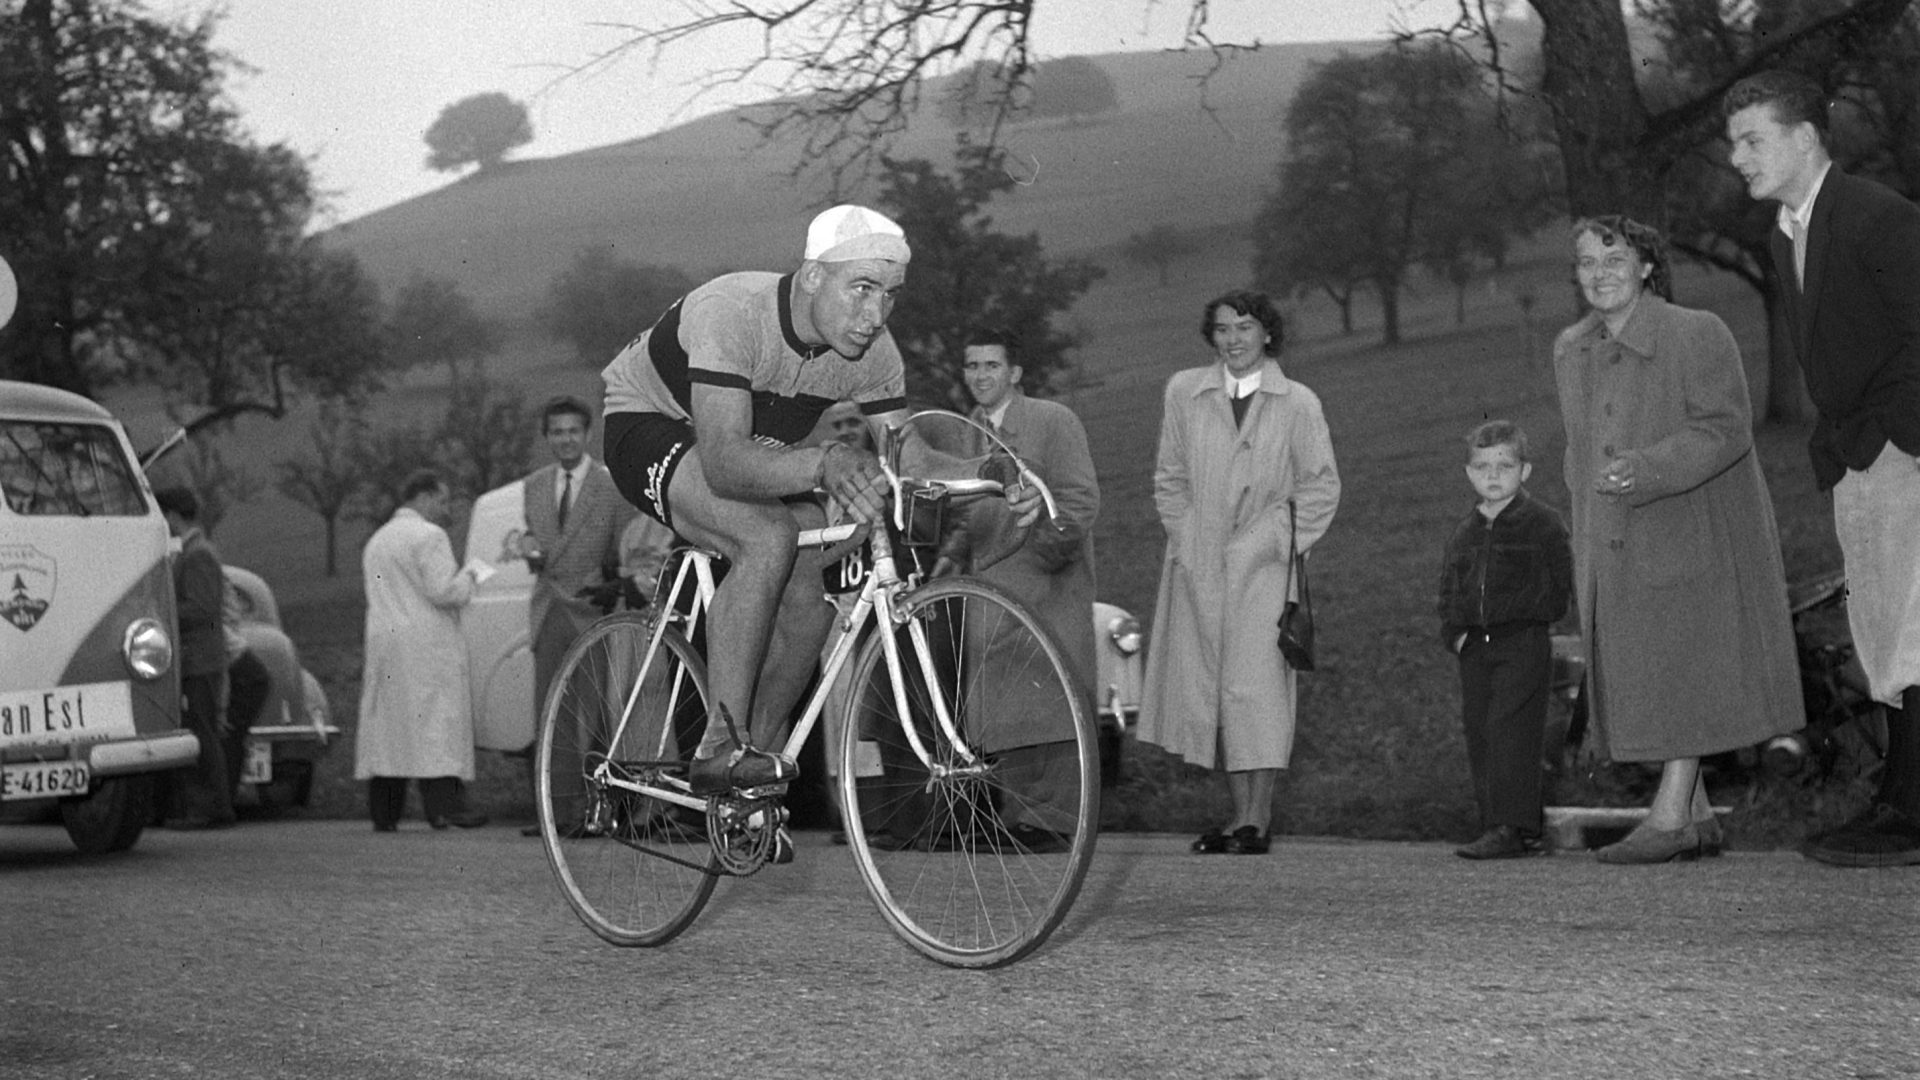 Dutch cyclist Wim van Est finishes third in the 1951 Grand Prix of Switzerland. Photo: ATP/RDB/ullstein bild/Getty